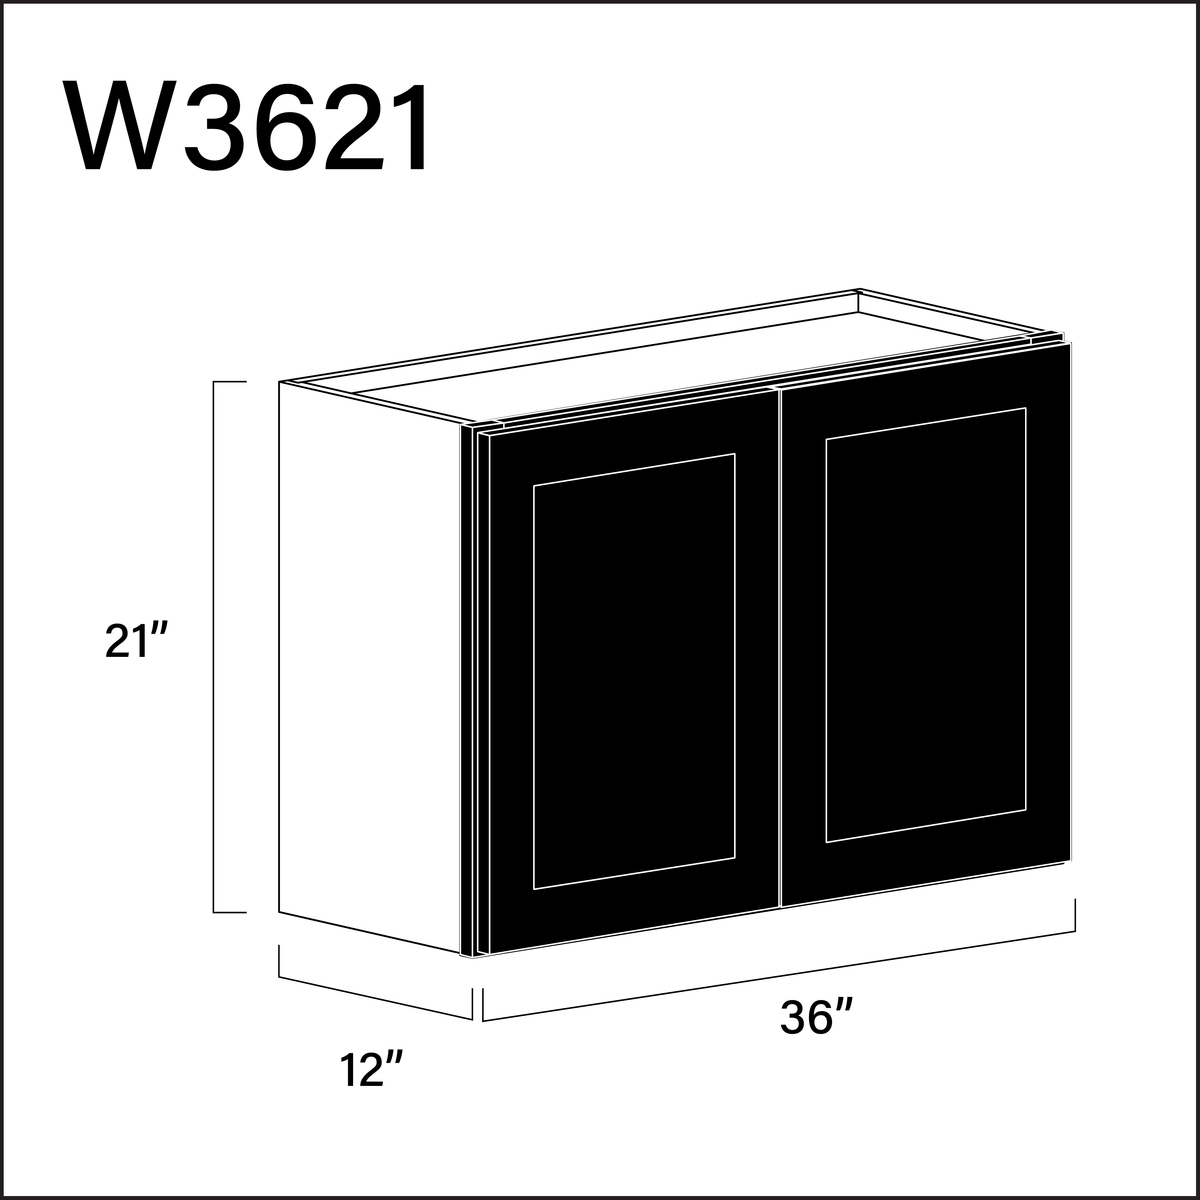 Black Shaker Double Door Wall Cabinet - 36" W x 21" H x 12" D